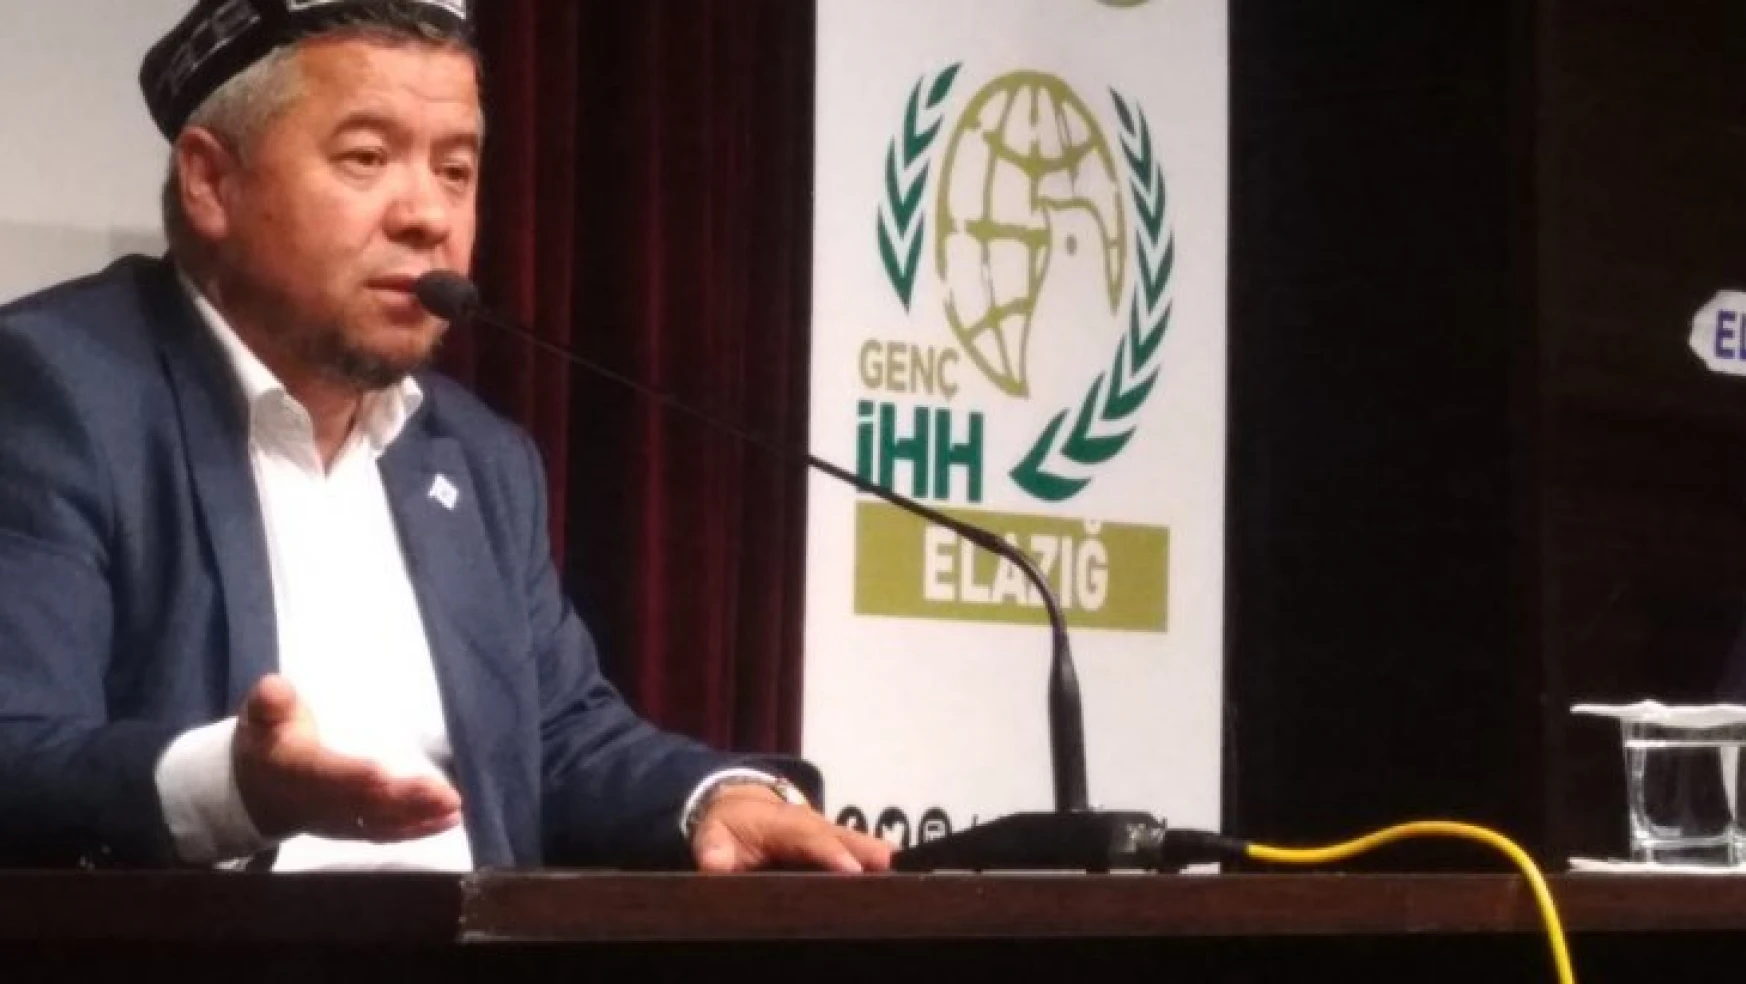 İHH'nın Düzenlediği Konferans'ta Doğu Türkistan Anlatıldı